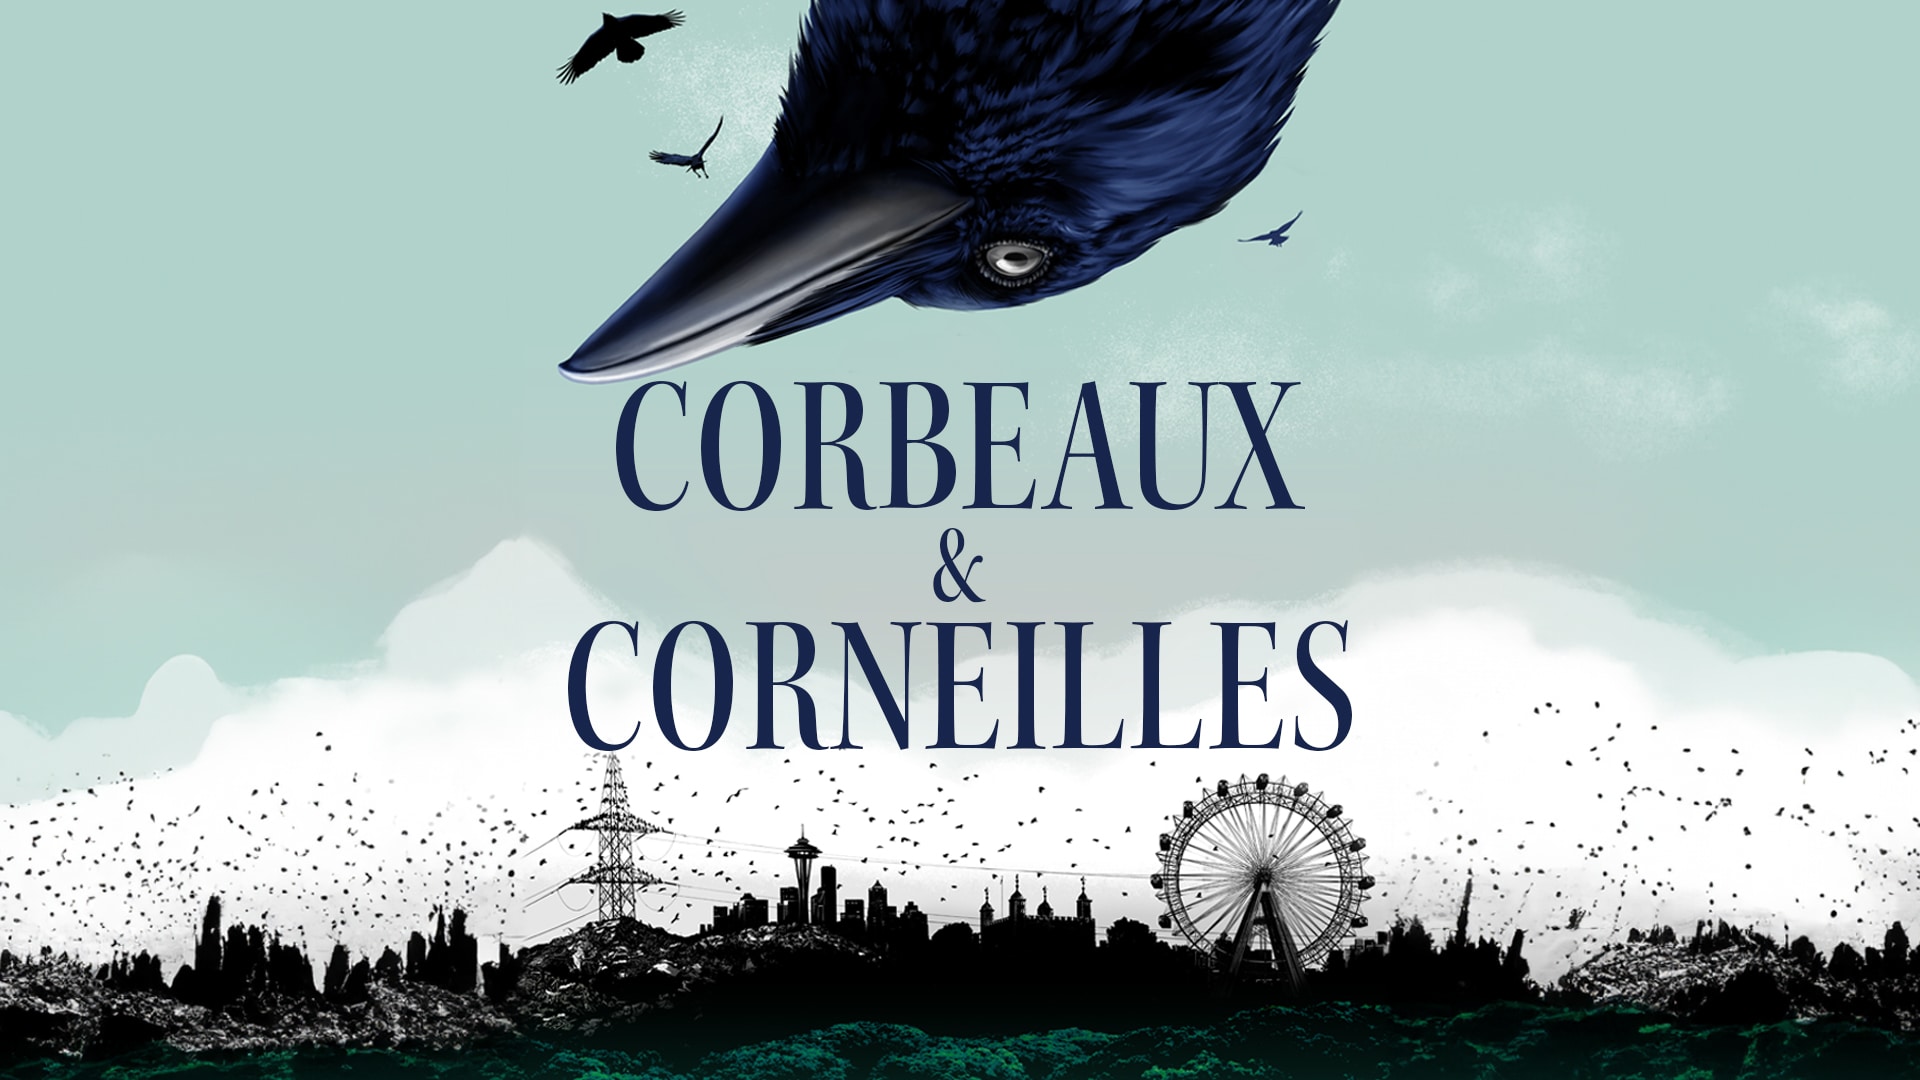 Corbeaux & Corneilles